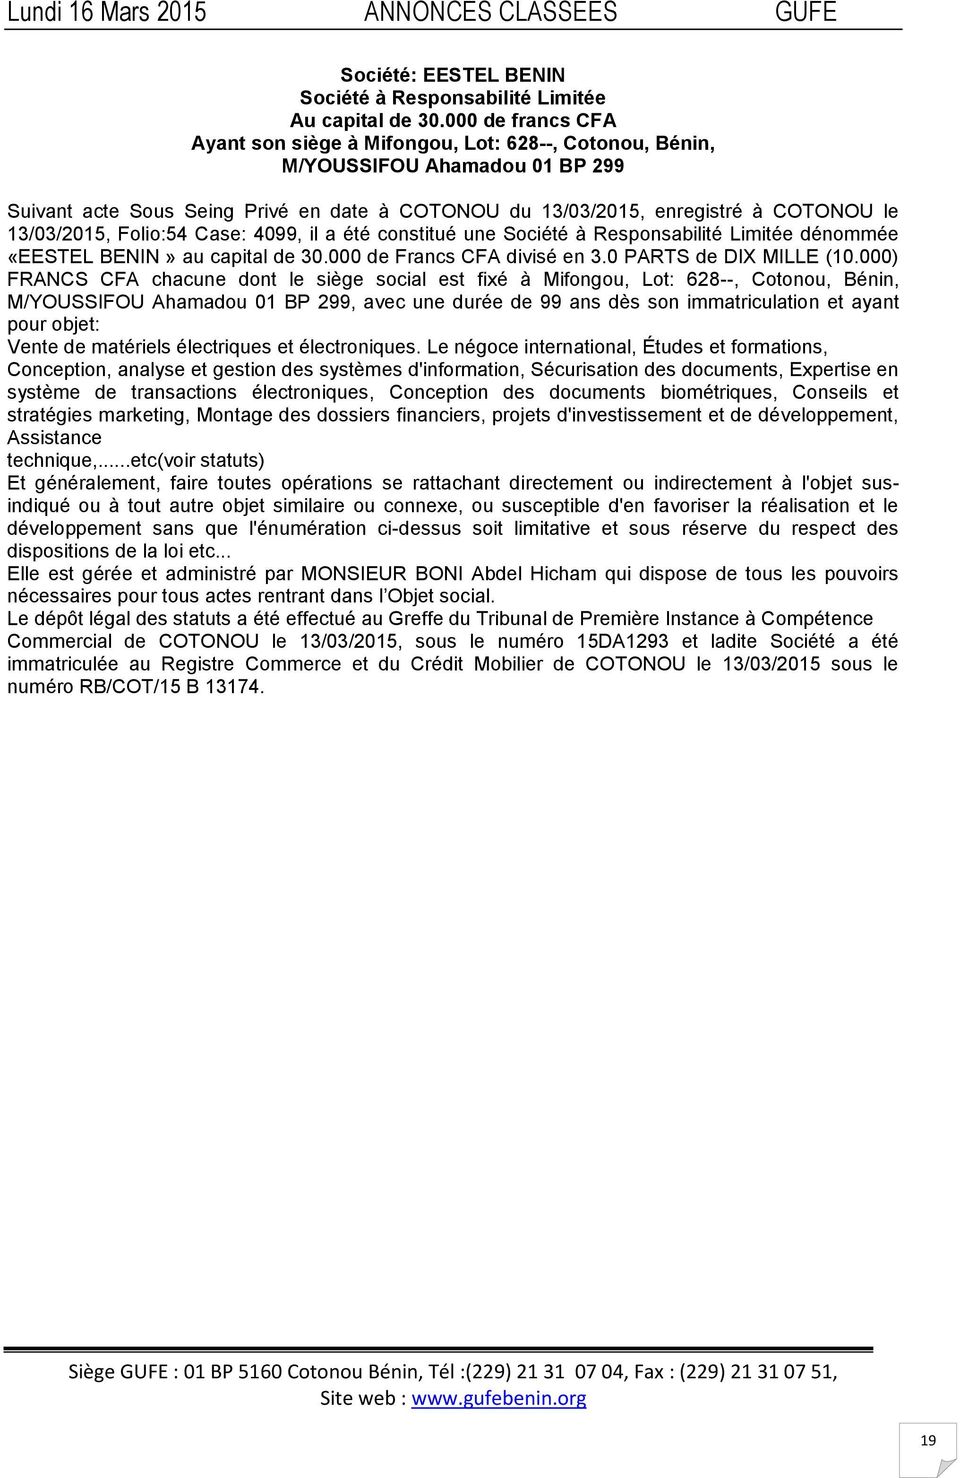 13/03/2015, Folio:54 Case: 4099, il a été constitué une Société à Responsabilité Limitée dénommée «EESTEL BENIN» au capital de 30.000 de Francs CFA divisé en 3.0 PARTS de DIX MILLE (10.